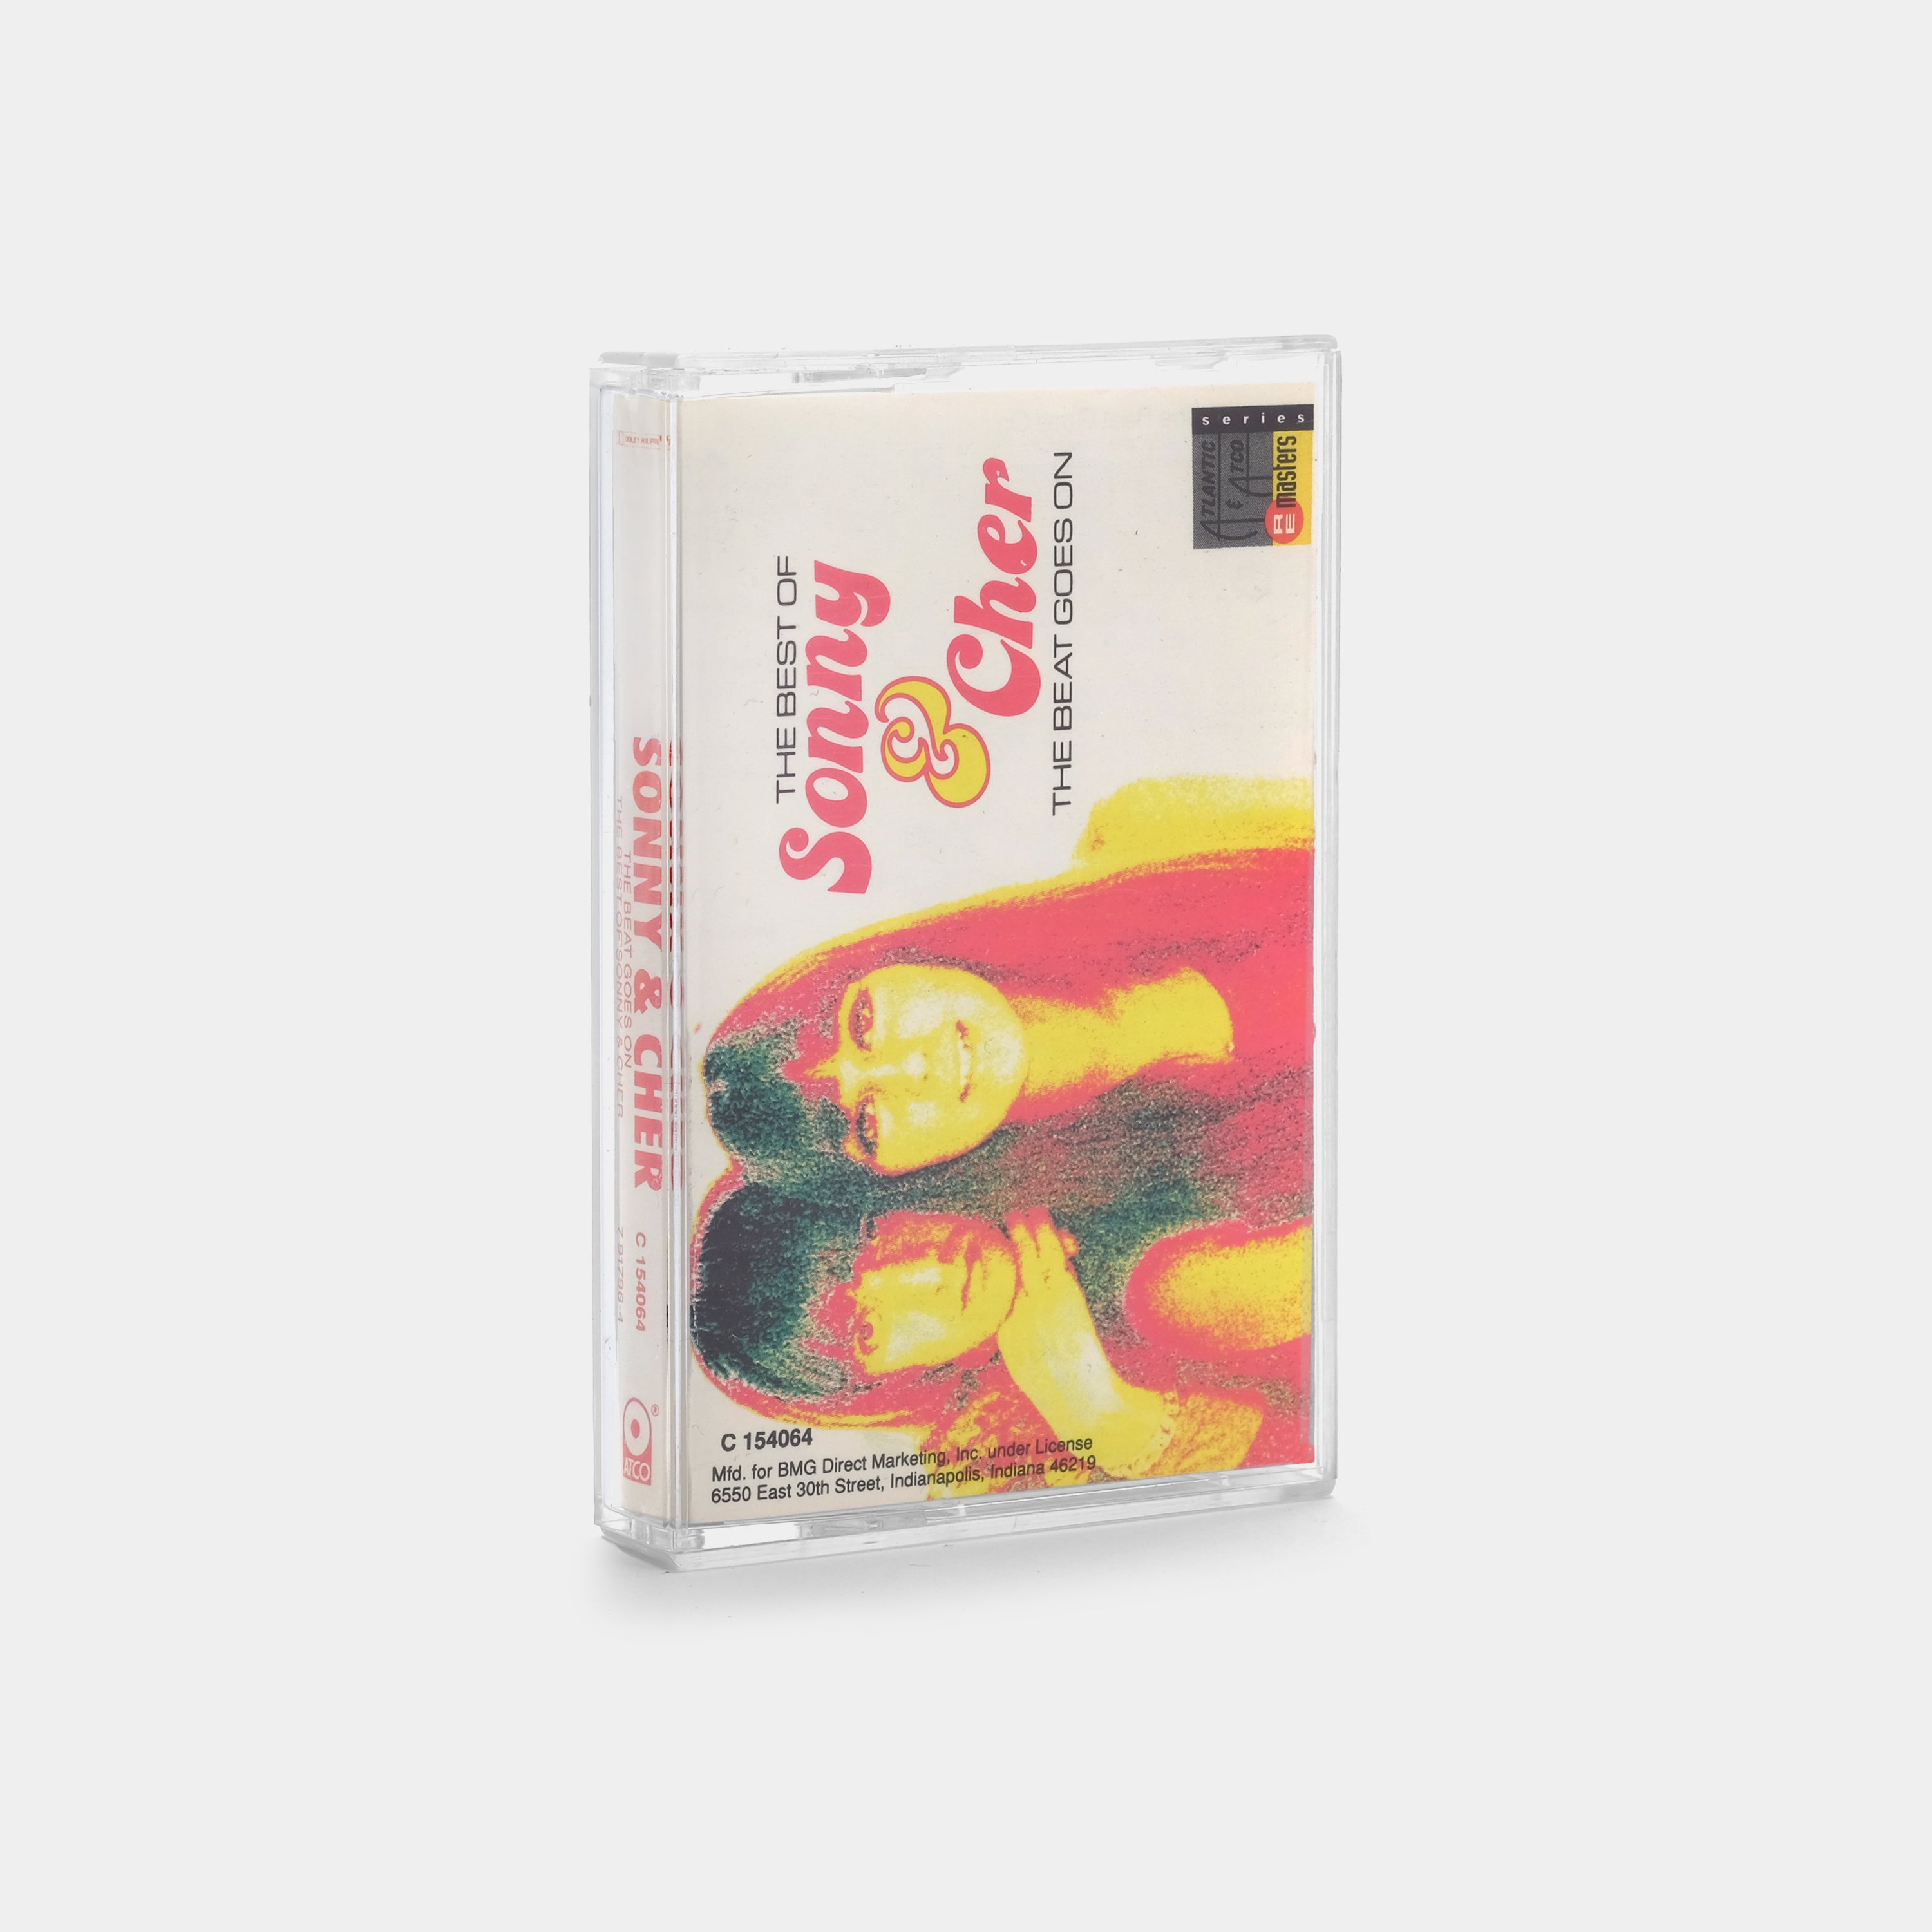 Sonny & Cher - The Best Of Sonny & Cher Cassette Tape